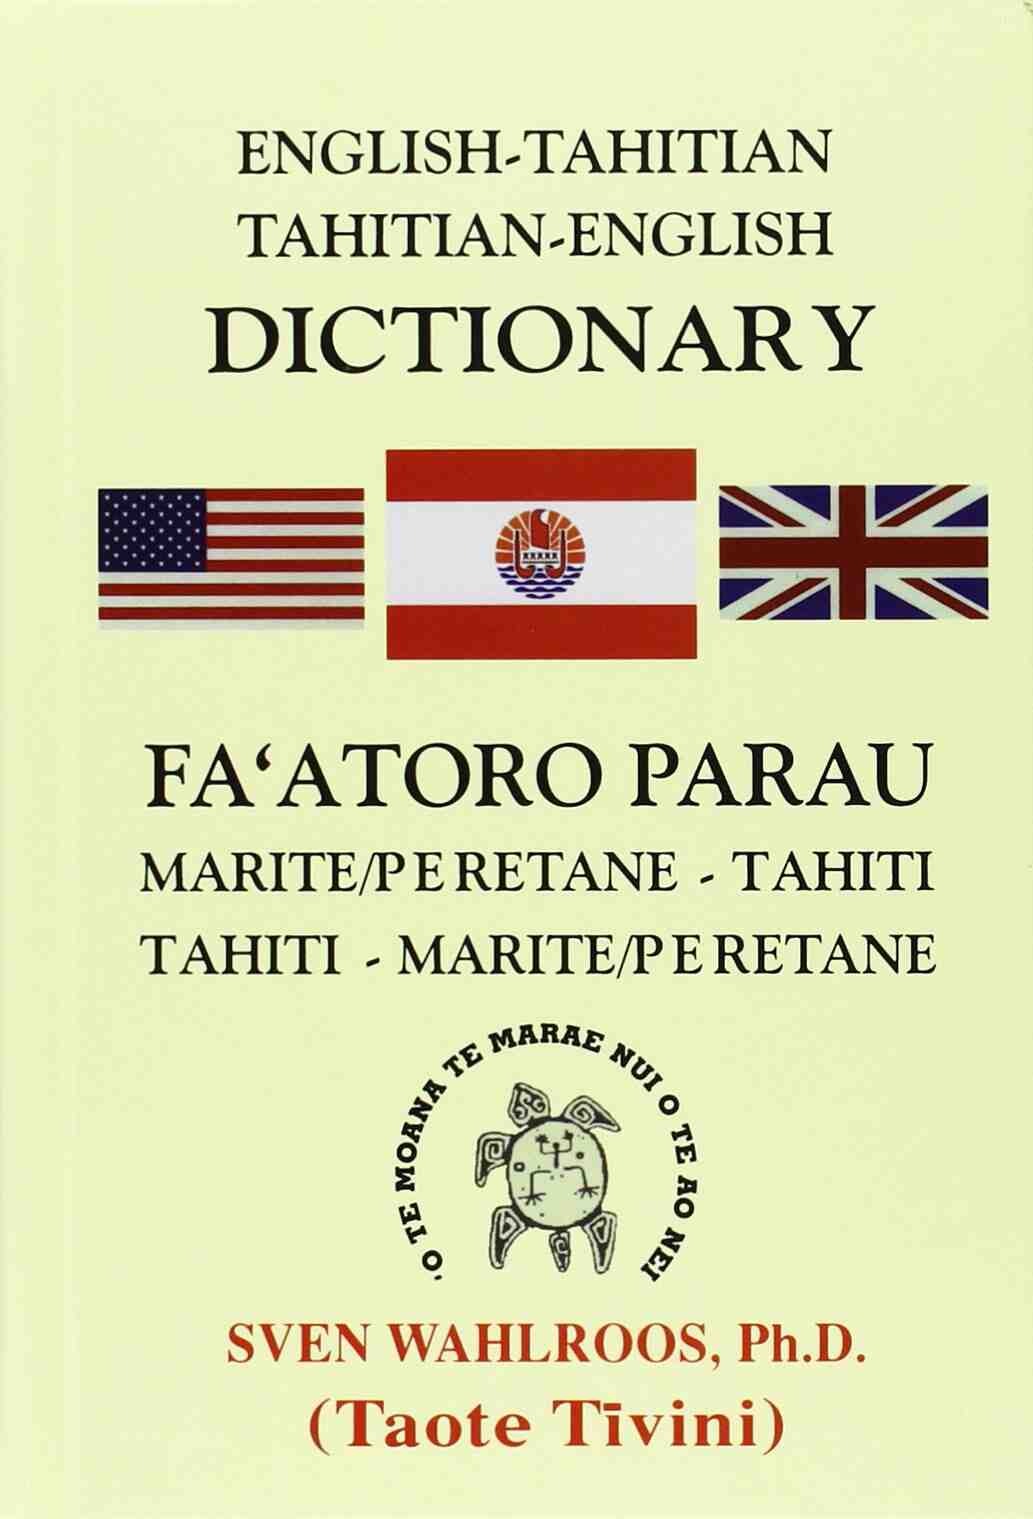 Galeria de Imagens 4: Que língua é falada no Tahiti?